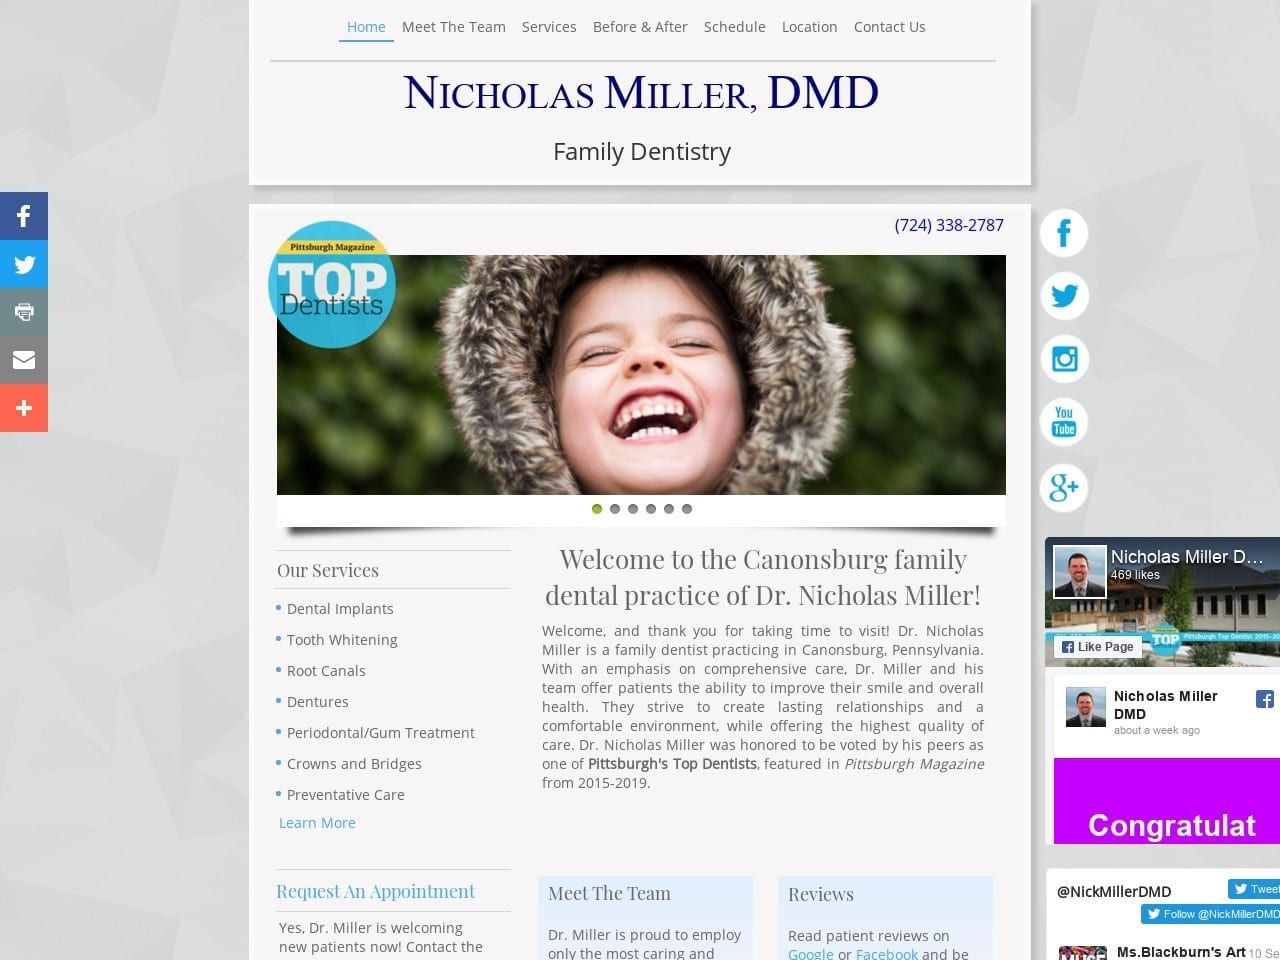 Nicholas Miller DMD Website Screenshot from nickmillerdmd.com